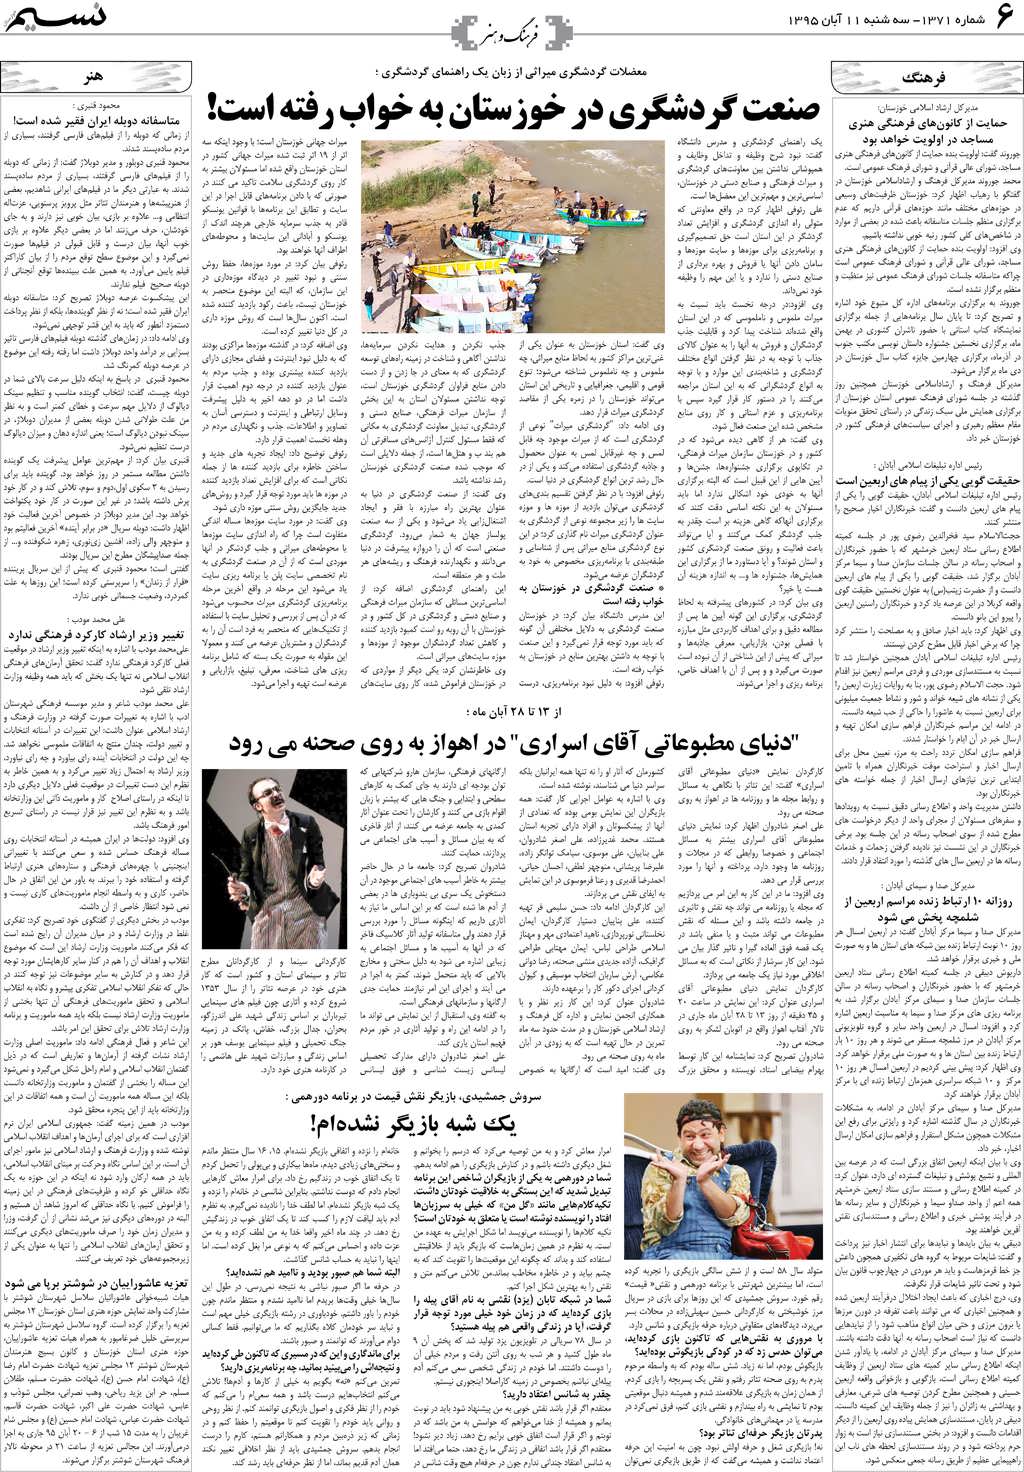 صفحه فرهنگ و هنر روزنامه نسیم شماره 1371